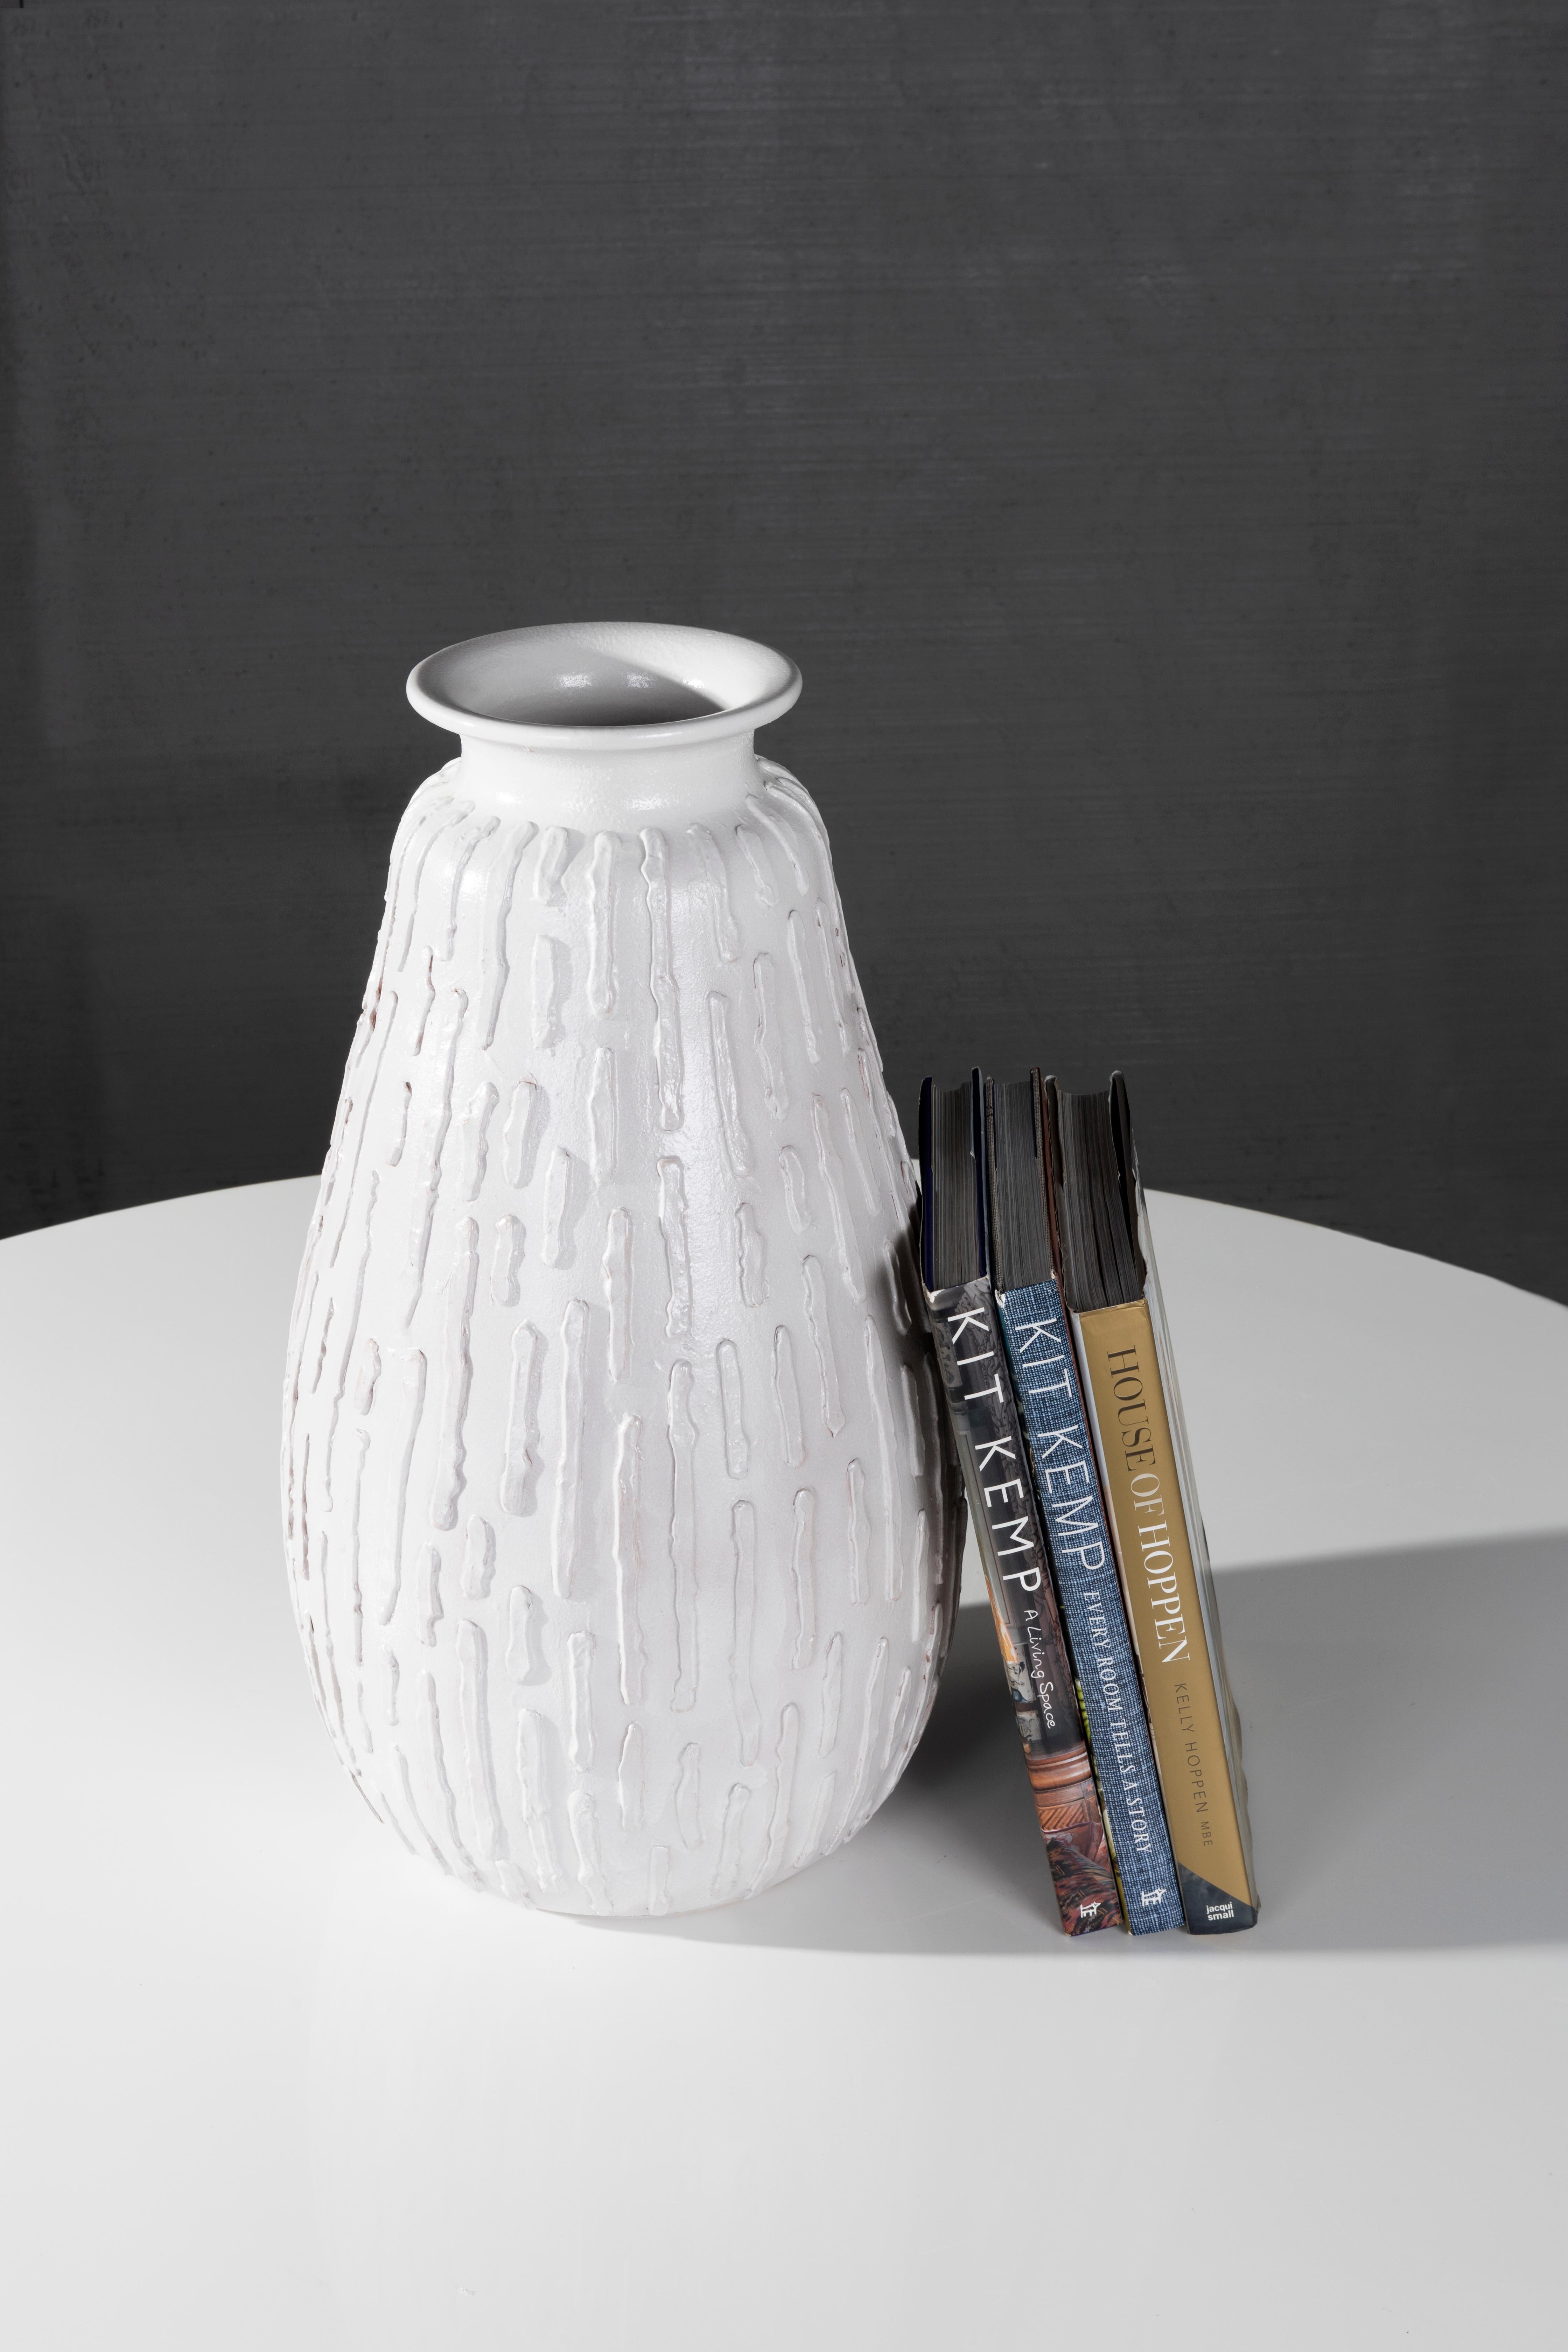 Le vase Ribu, le dernier né de la ligne RENG, est un vase en forme de gourde en terre cuite vernie, inspiré de la lampe de table qui porte le même nom.

Toutes les pièces de la ligne RENG sont conçues à Dallas, au Texas, par Brendan Bass. Ensuite,